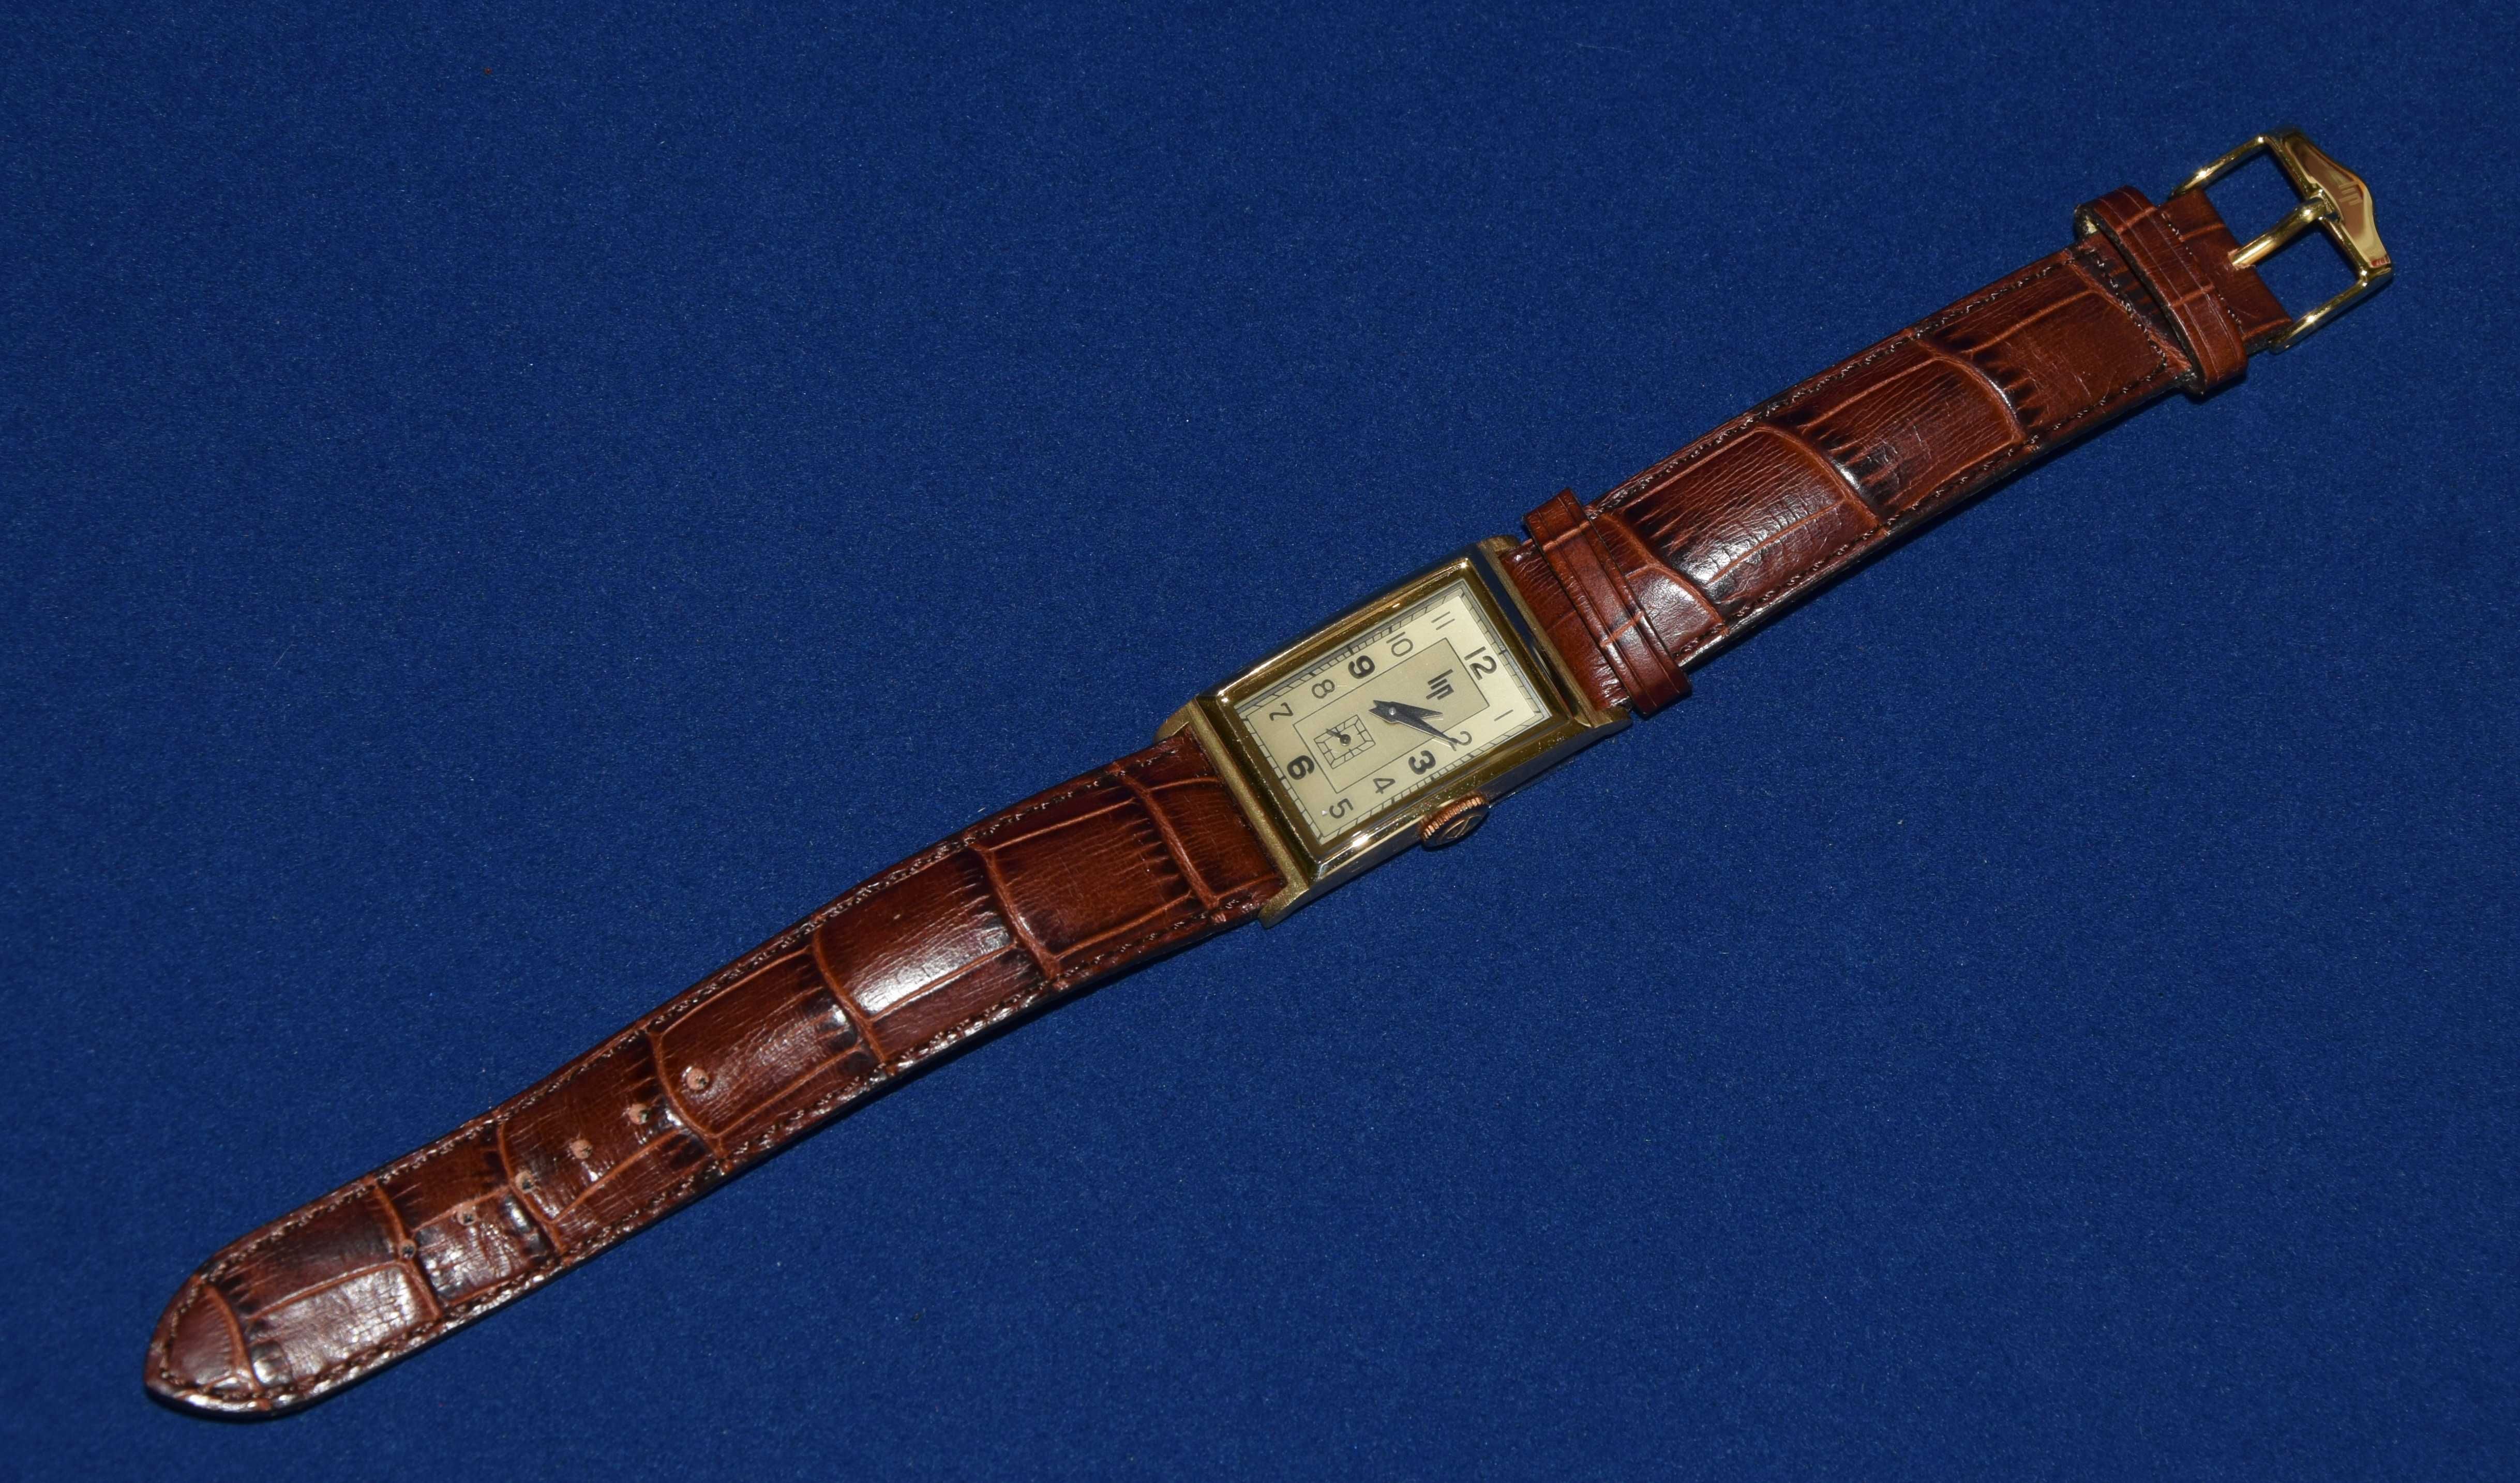 Relógio “LIP T18” modelo oferecido por De Gaulle a Churchill